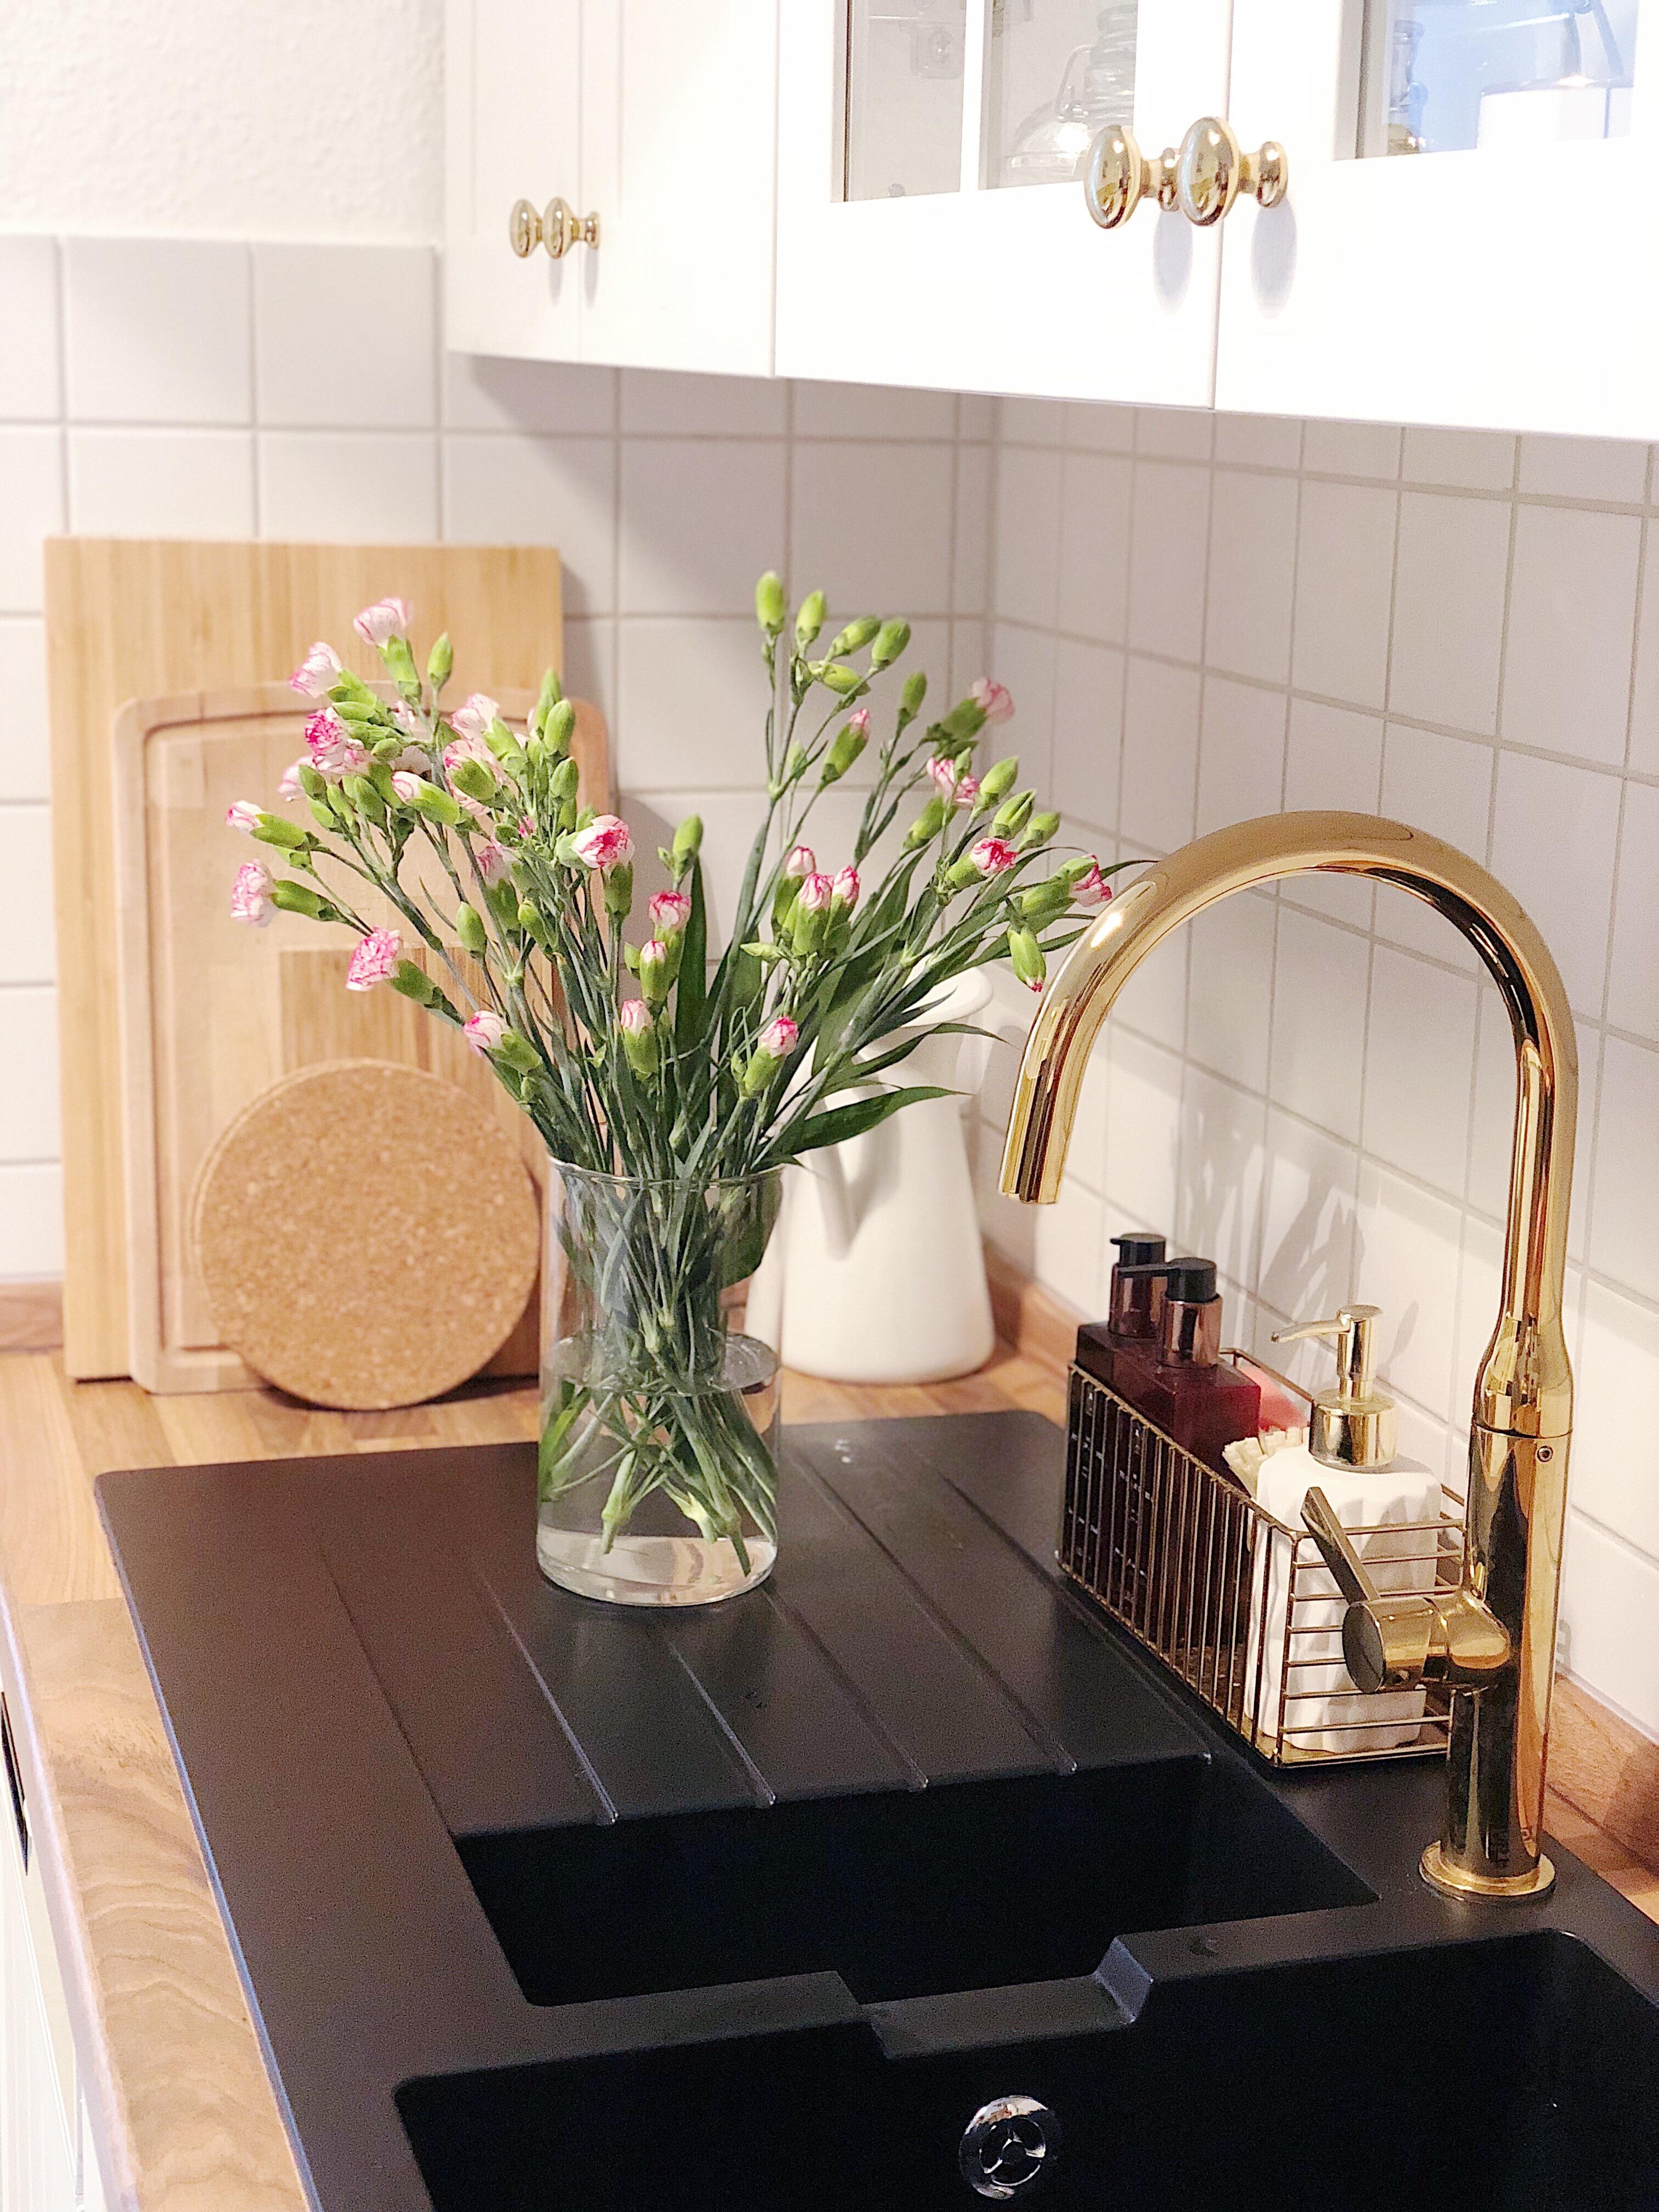 FlowerFriday. #küche #goldenedetails #flowerfriday #blumen #ikea #spüle